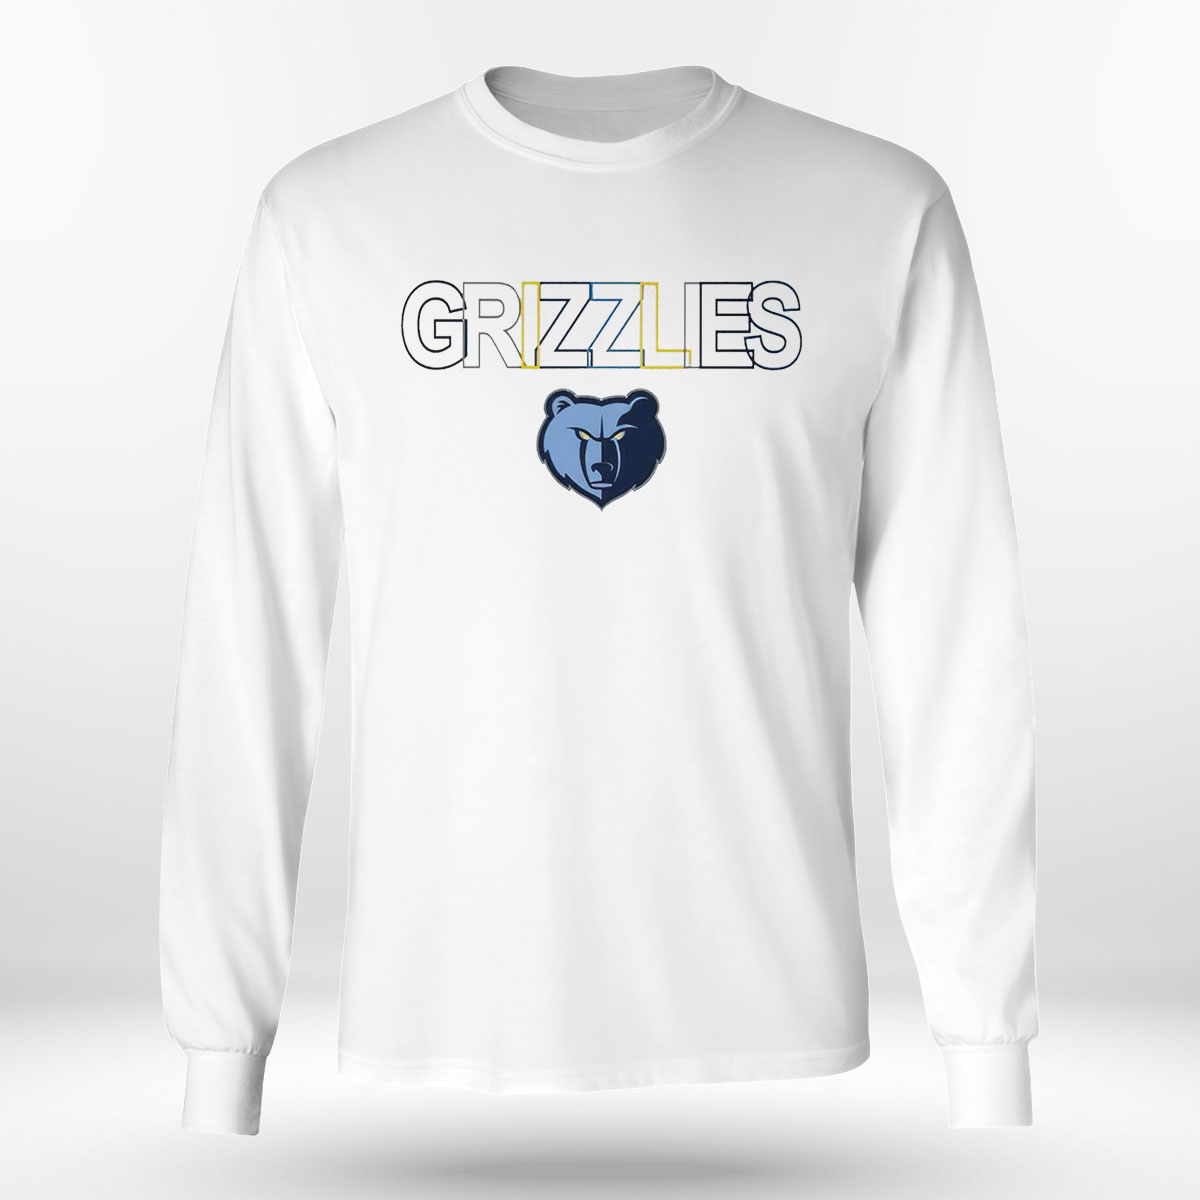 long sleeve memphis grizzlies shirt